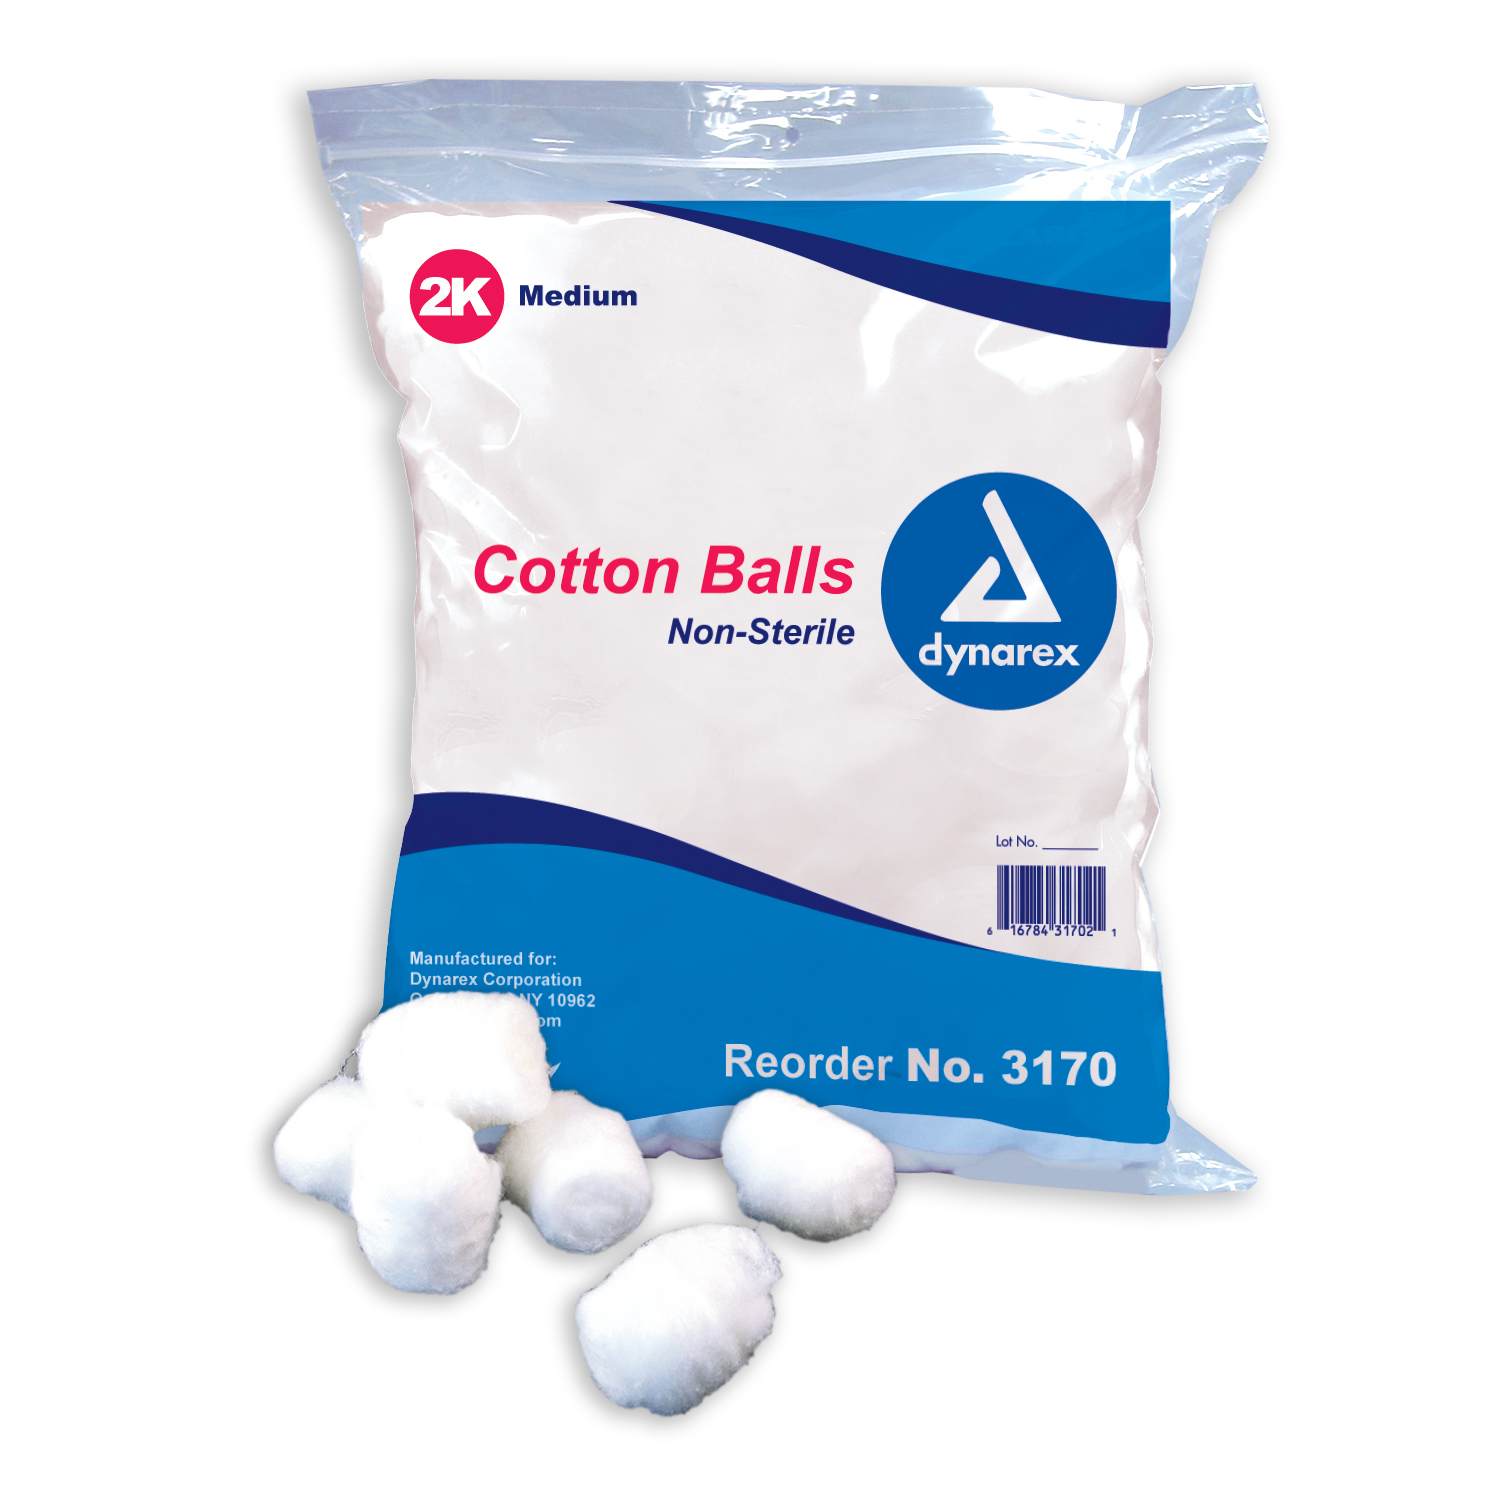 Wholesale Cotton Balls - Bulk Cotton Swabs - Wholesale Cosmetic